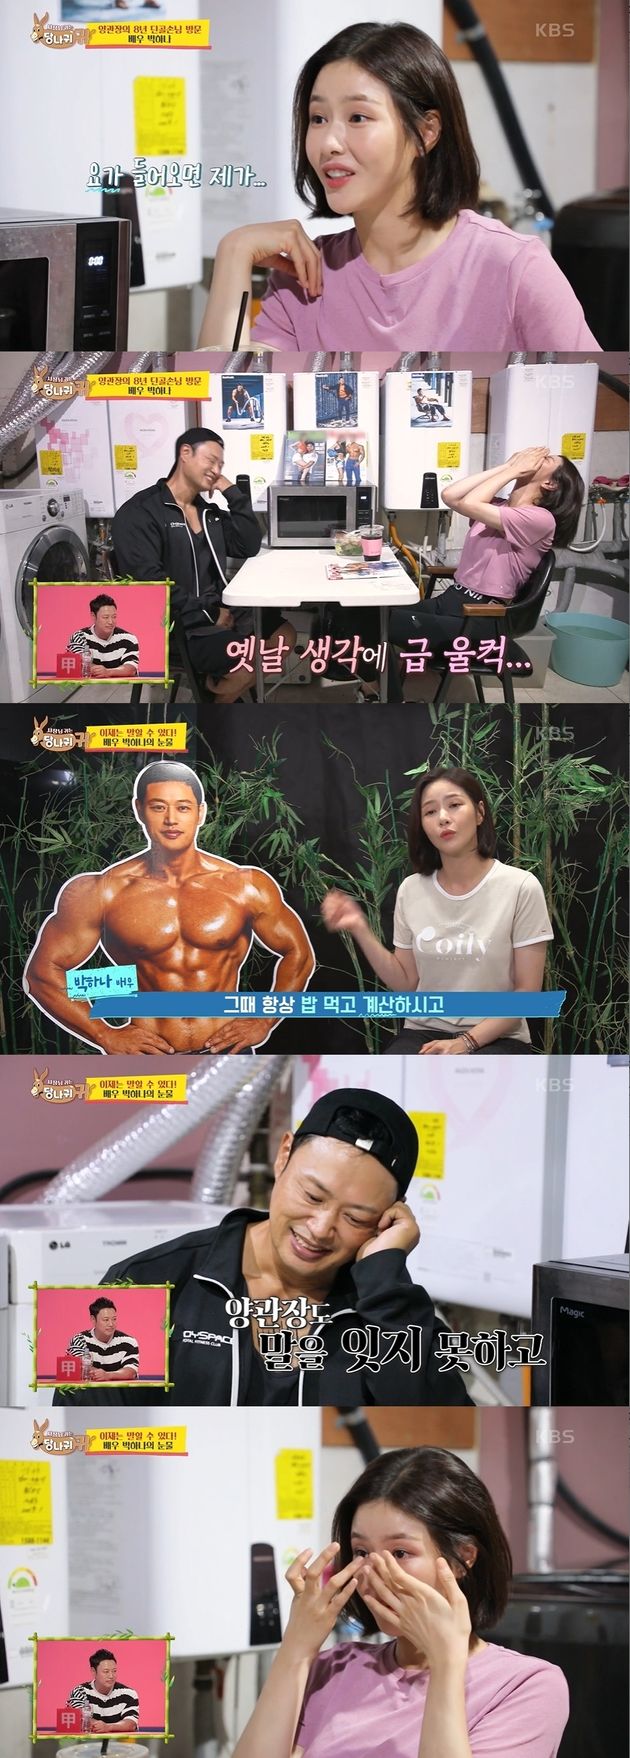 KBS 2TV ’사장님 귀는 당나귀 귀'